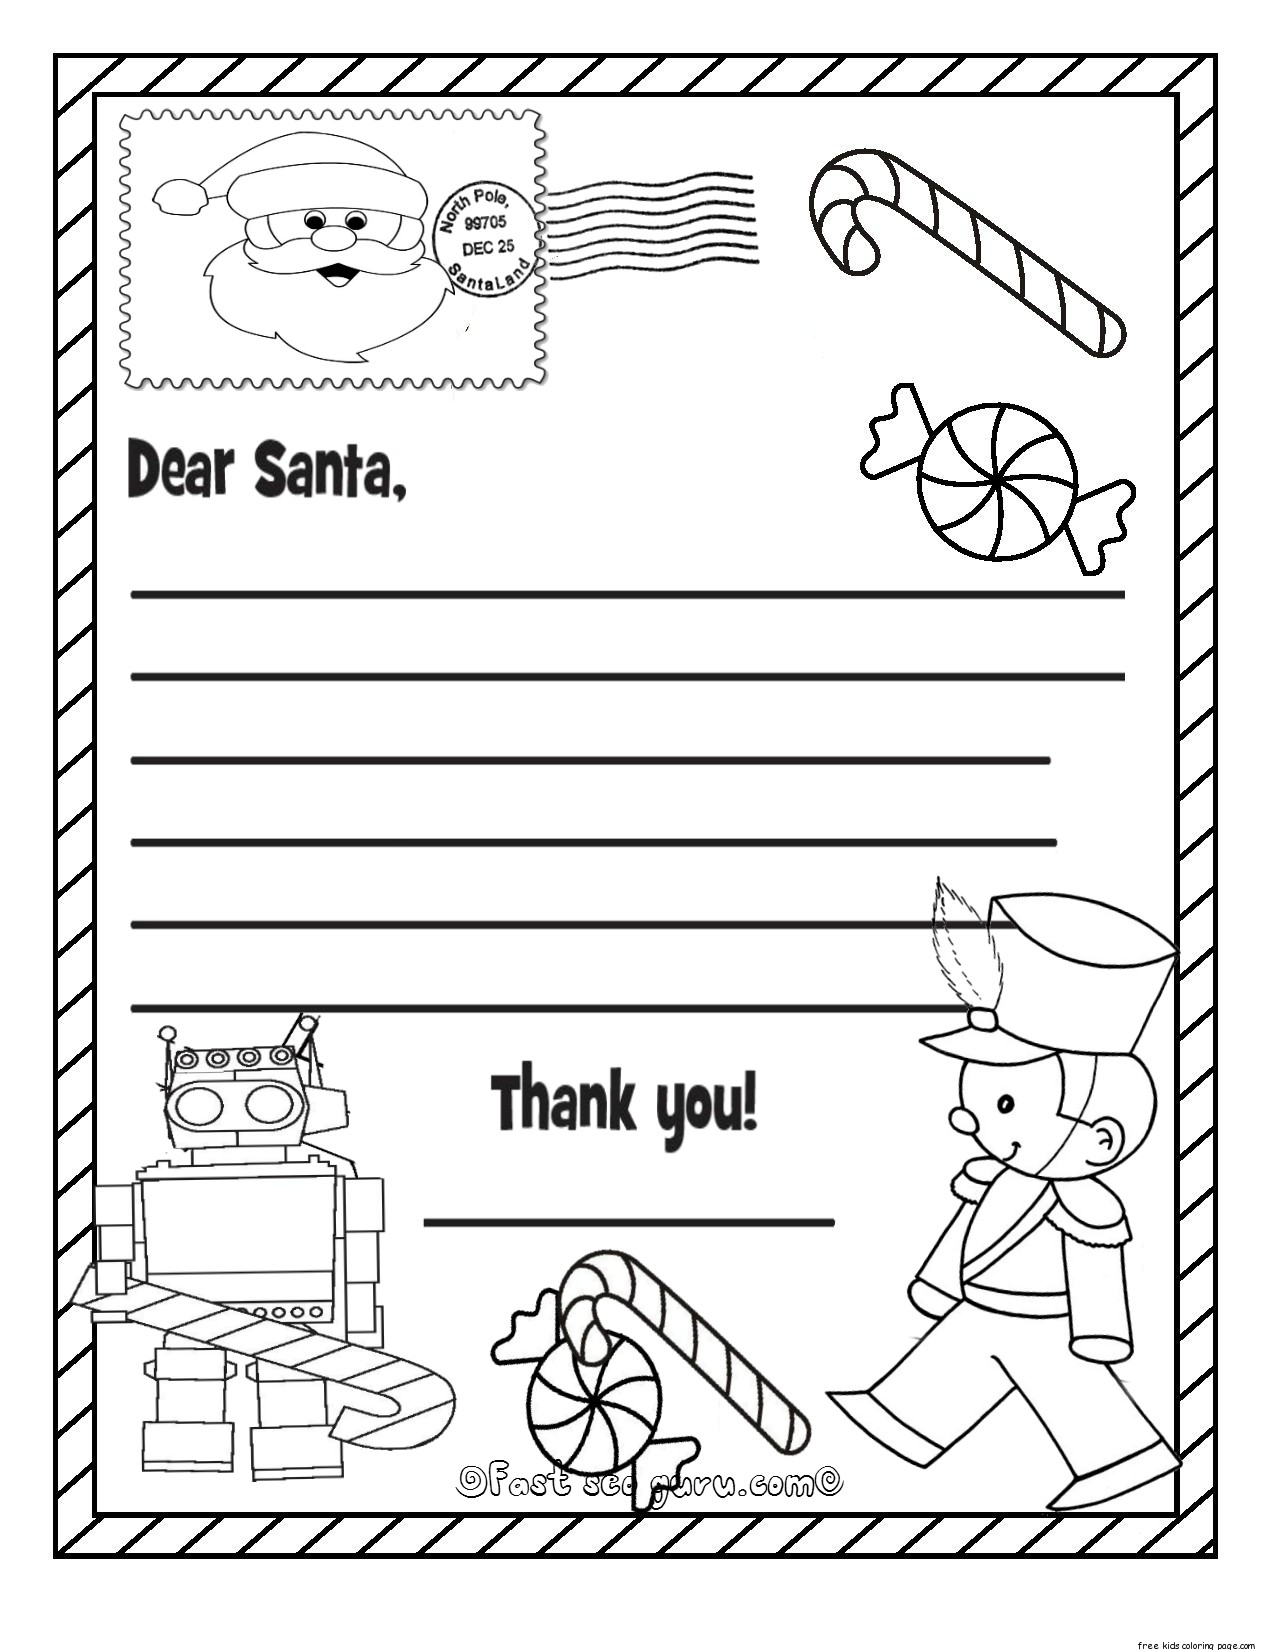 Christmas Wish List To Santa Claus For Kids For Kids Printable